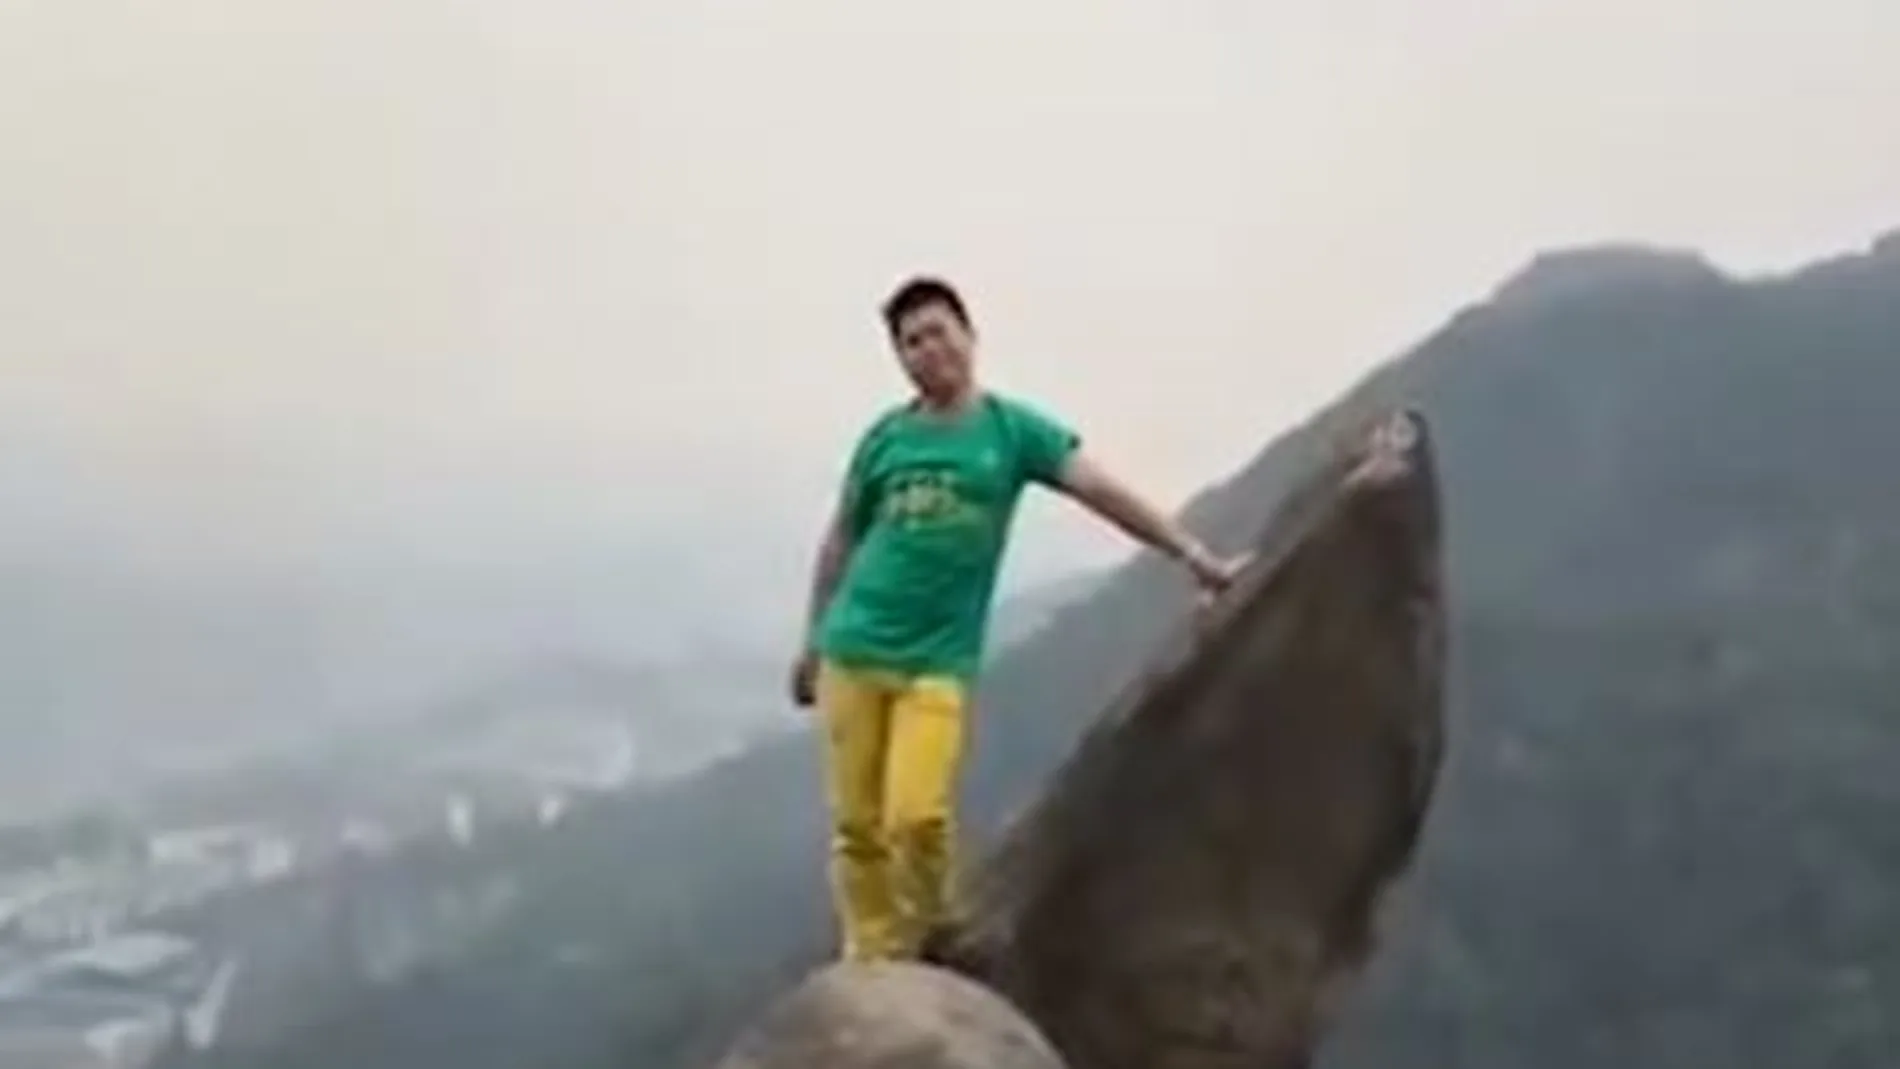 El hombre posa antes de empezar a hacer maniobras sobre la roca